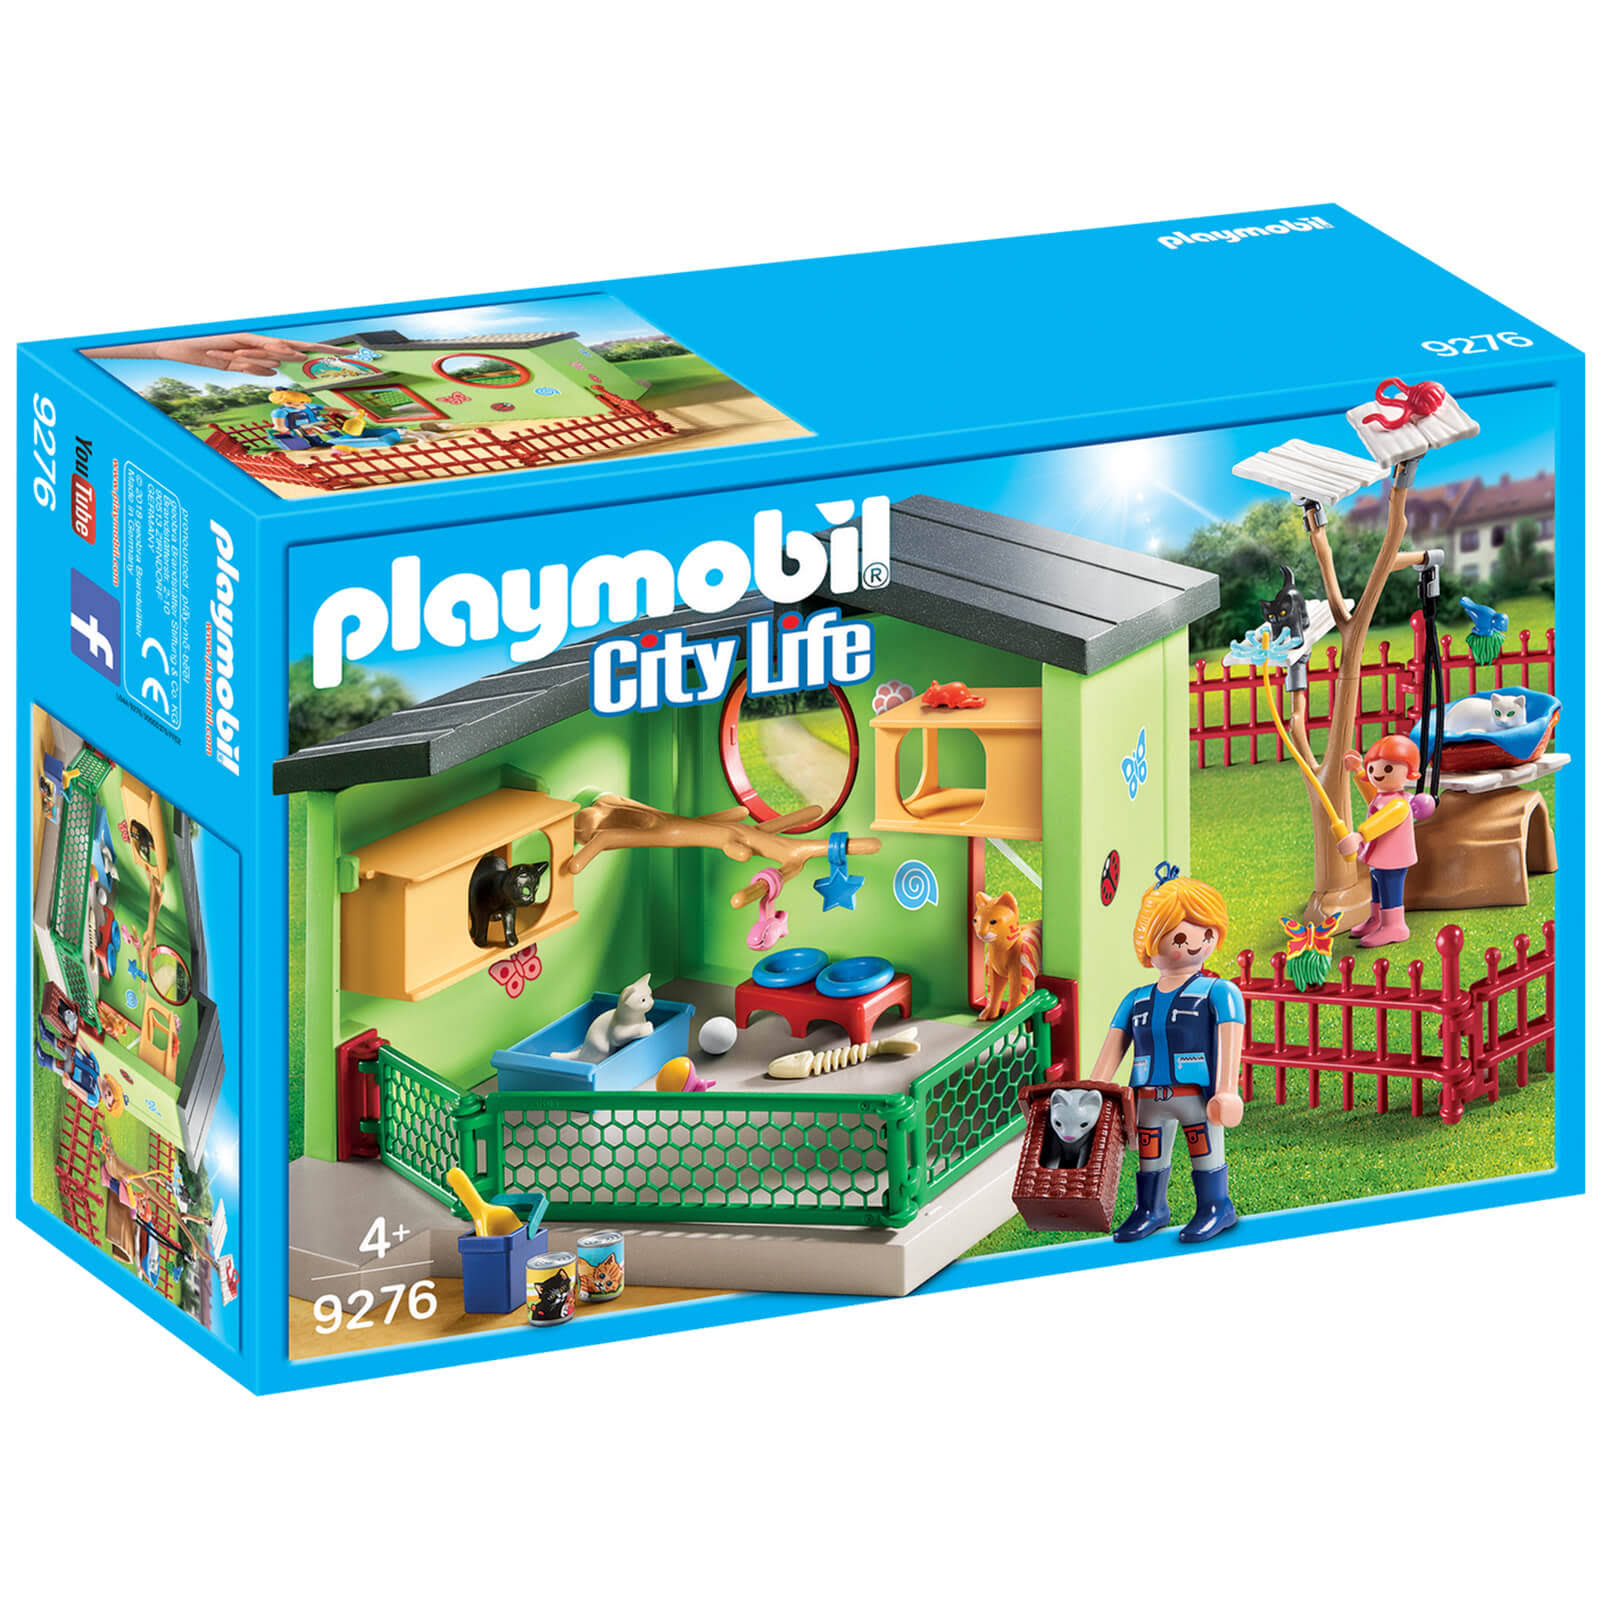 Playmobil City Life Playset